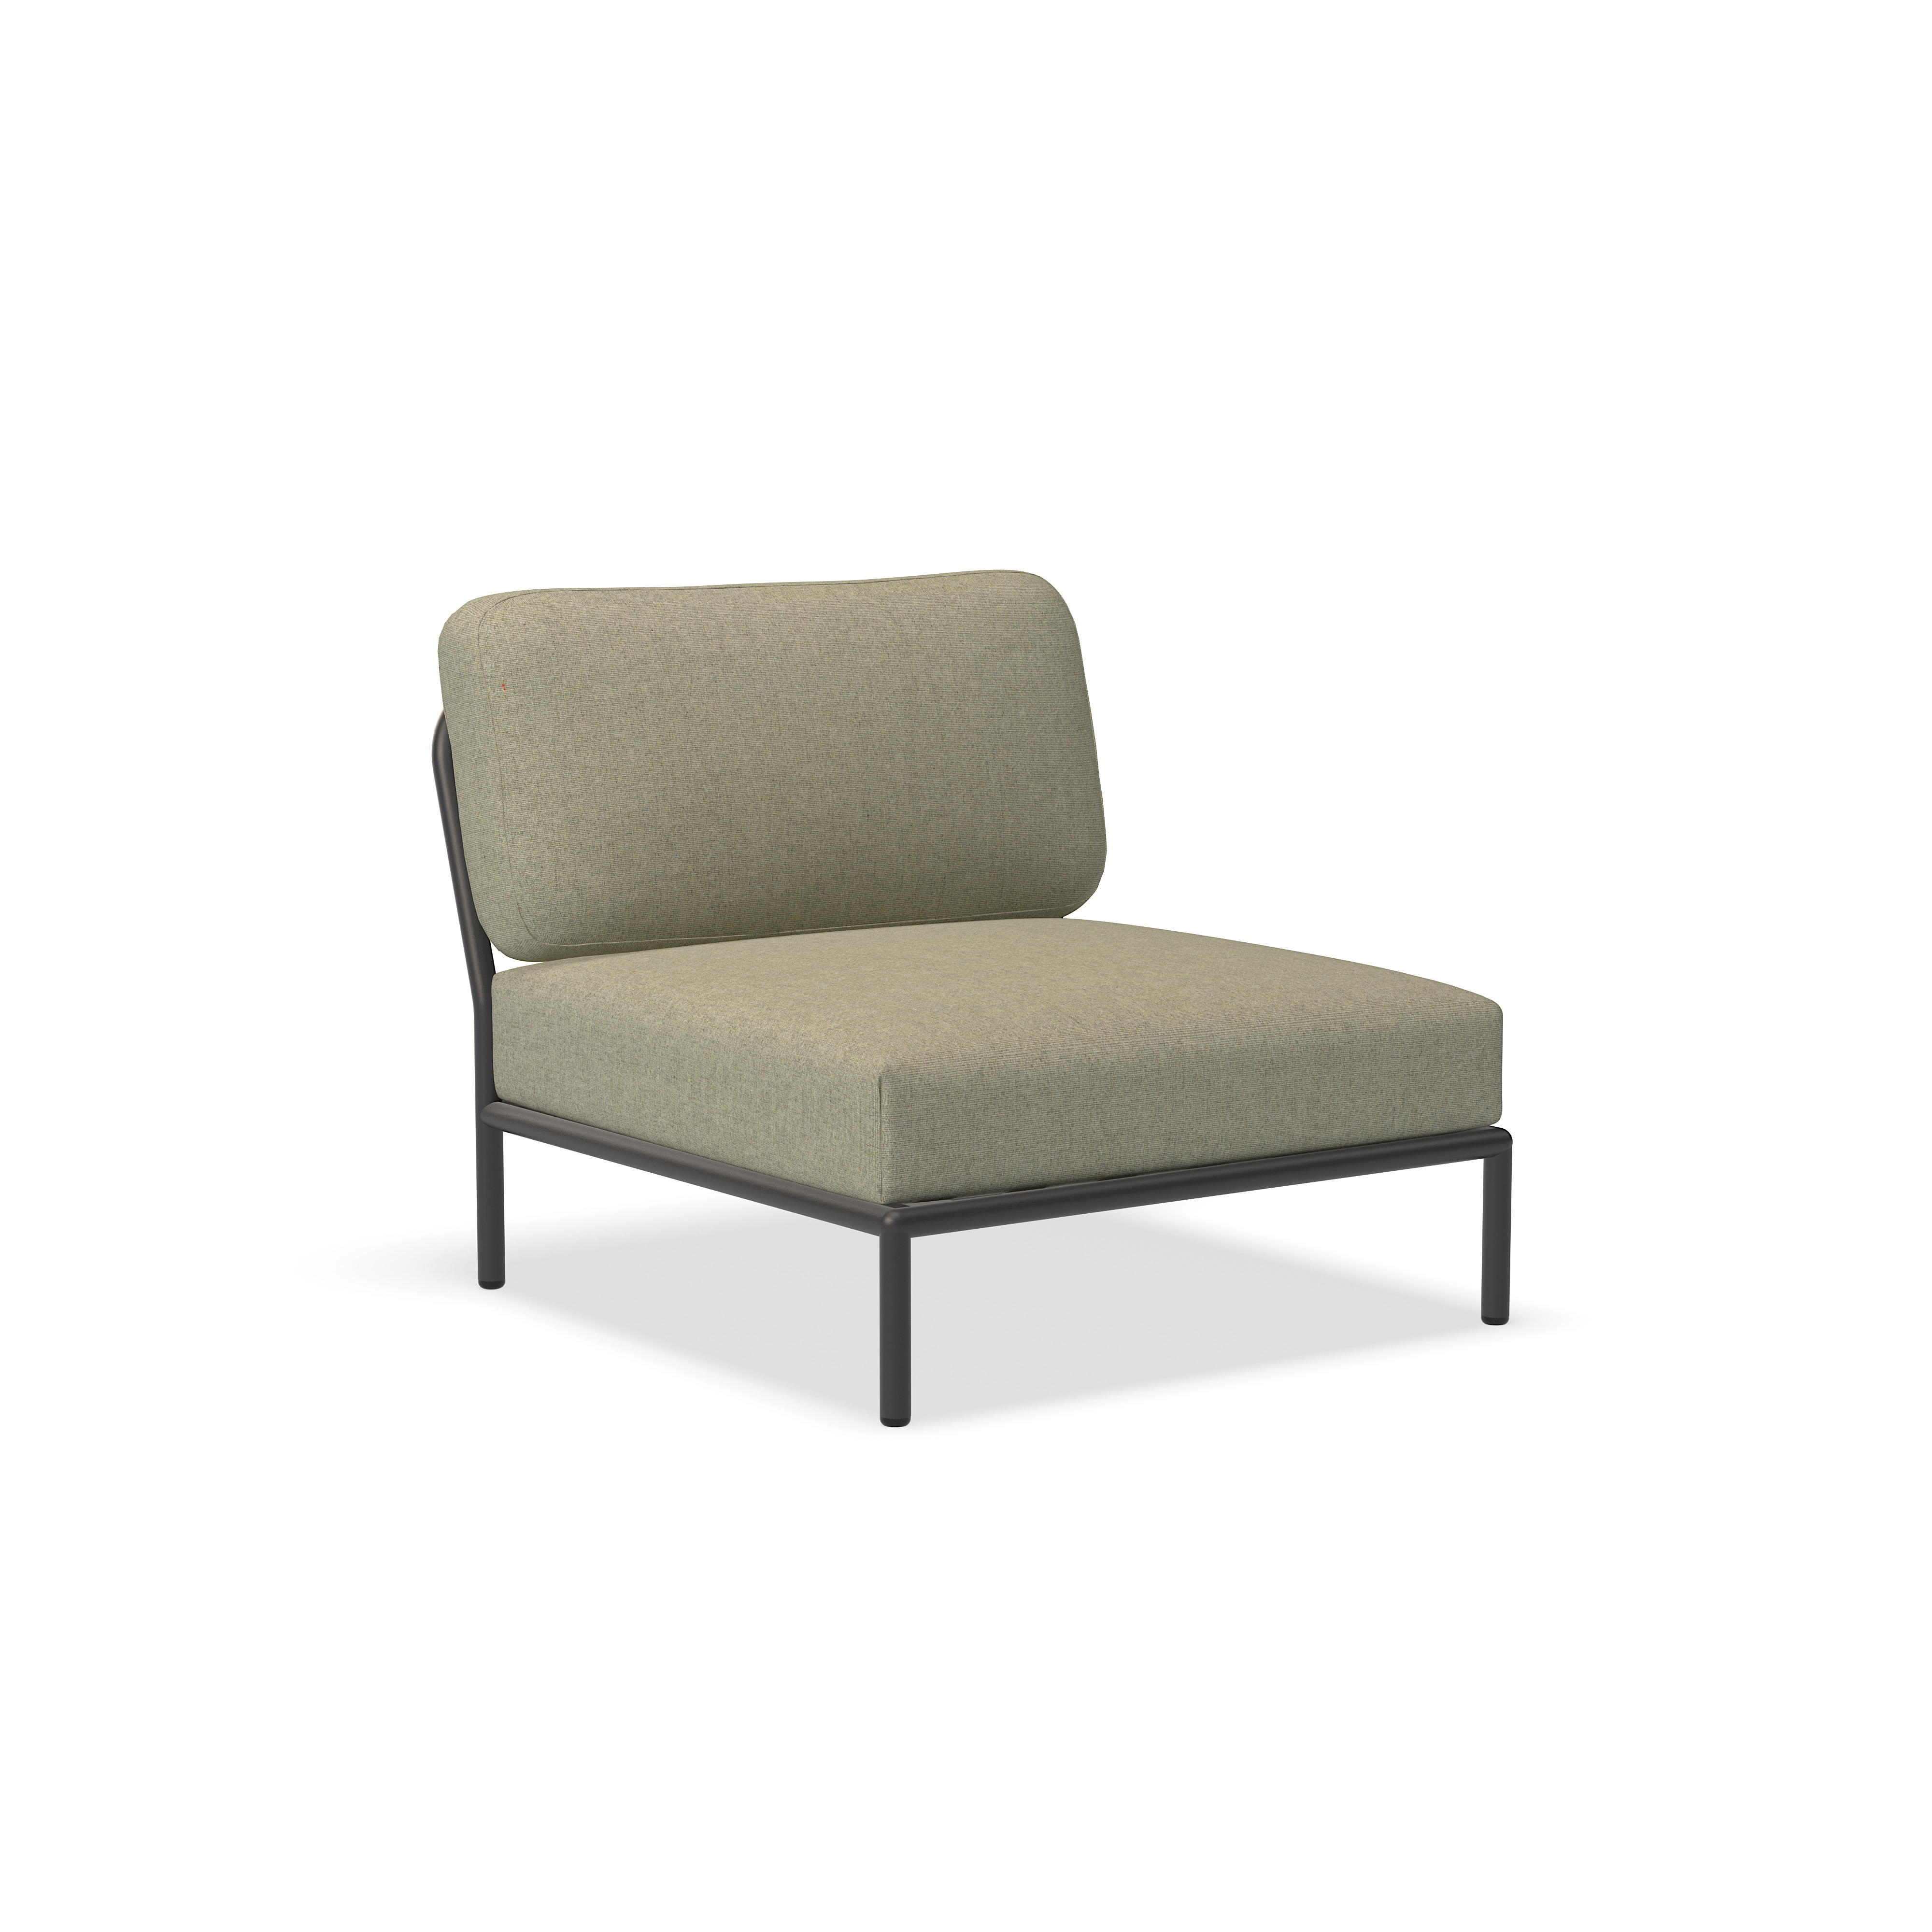 الكرسي - 12205-4751 - كرسي ، الطحلب (HERITAGE) ، هيكل رمادي غامق